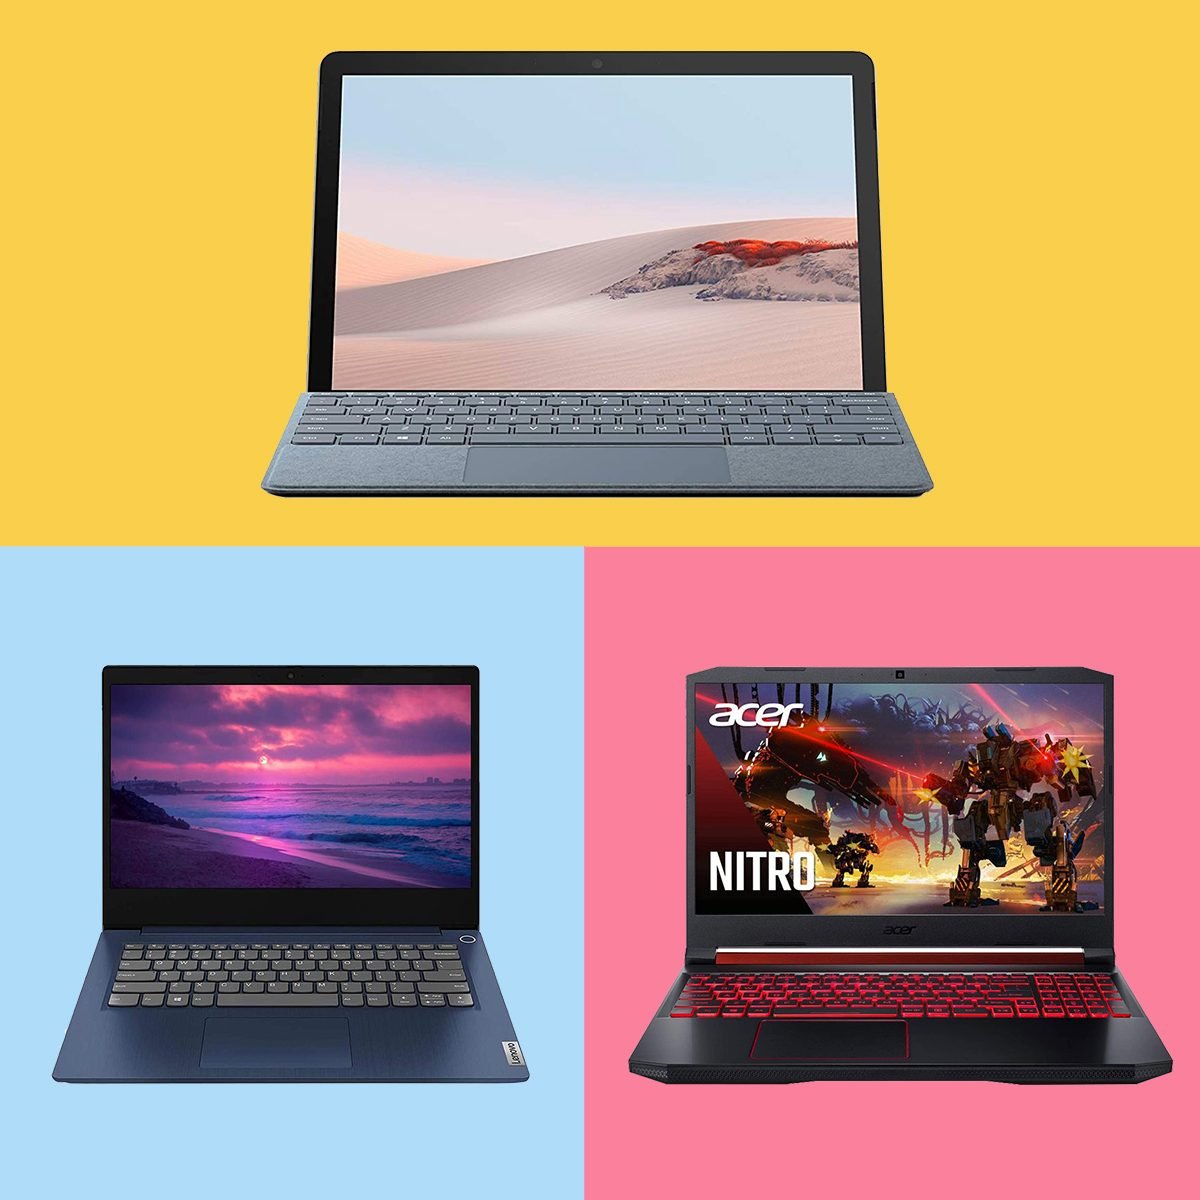 11 Best Affordable Laptops 2021 — Laptops Under $500